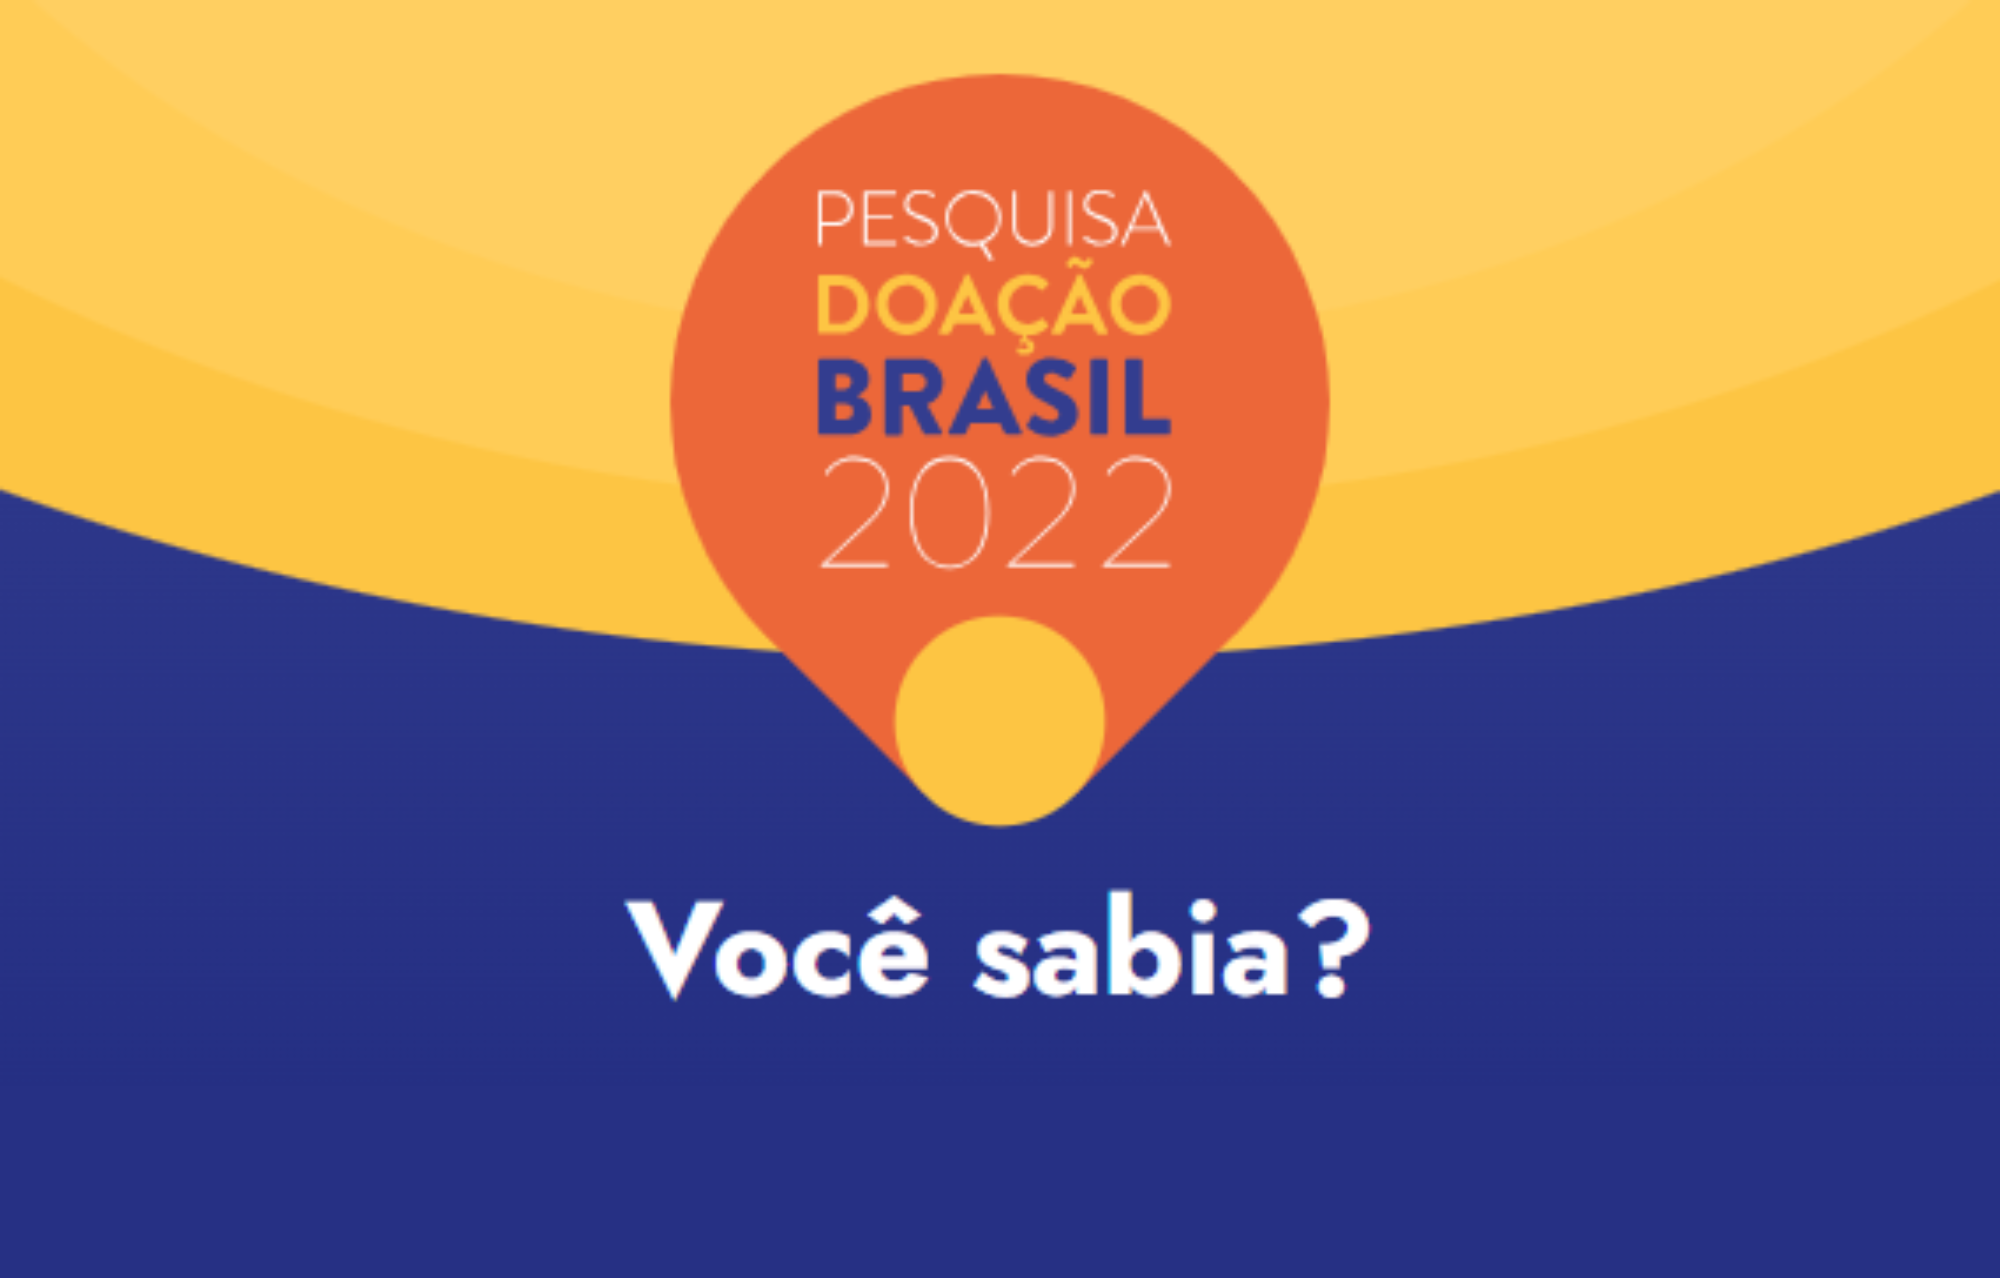 Pesquisa Doação Brasil 2022: Reflexões e Contribuições da Filantropia Comunitária e de Justiça Social